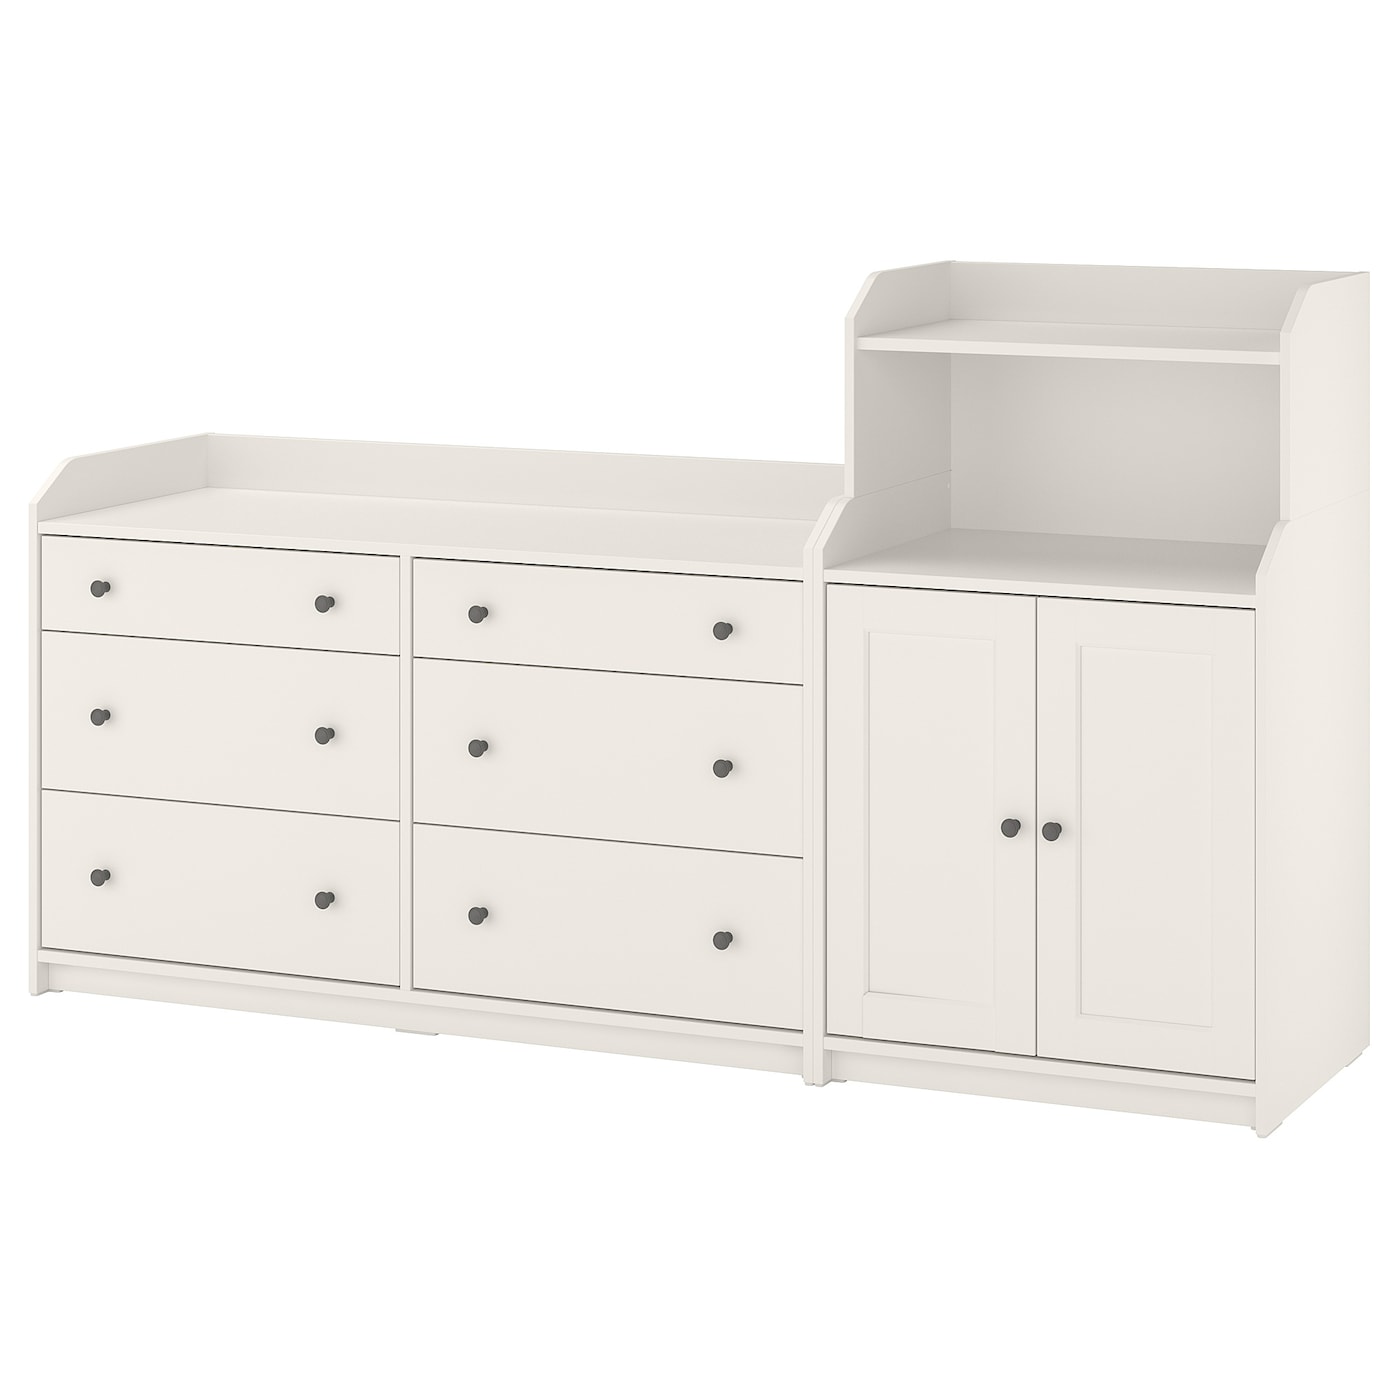 Шкаф - HAUGA IKEA/ ХАУГА ИКЕА,  208x116 см, белый